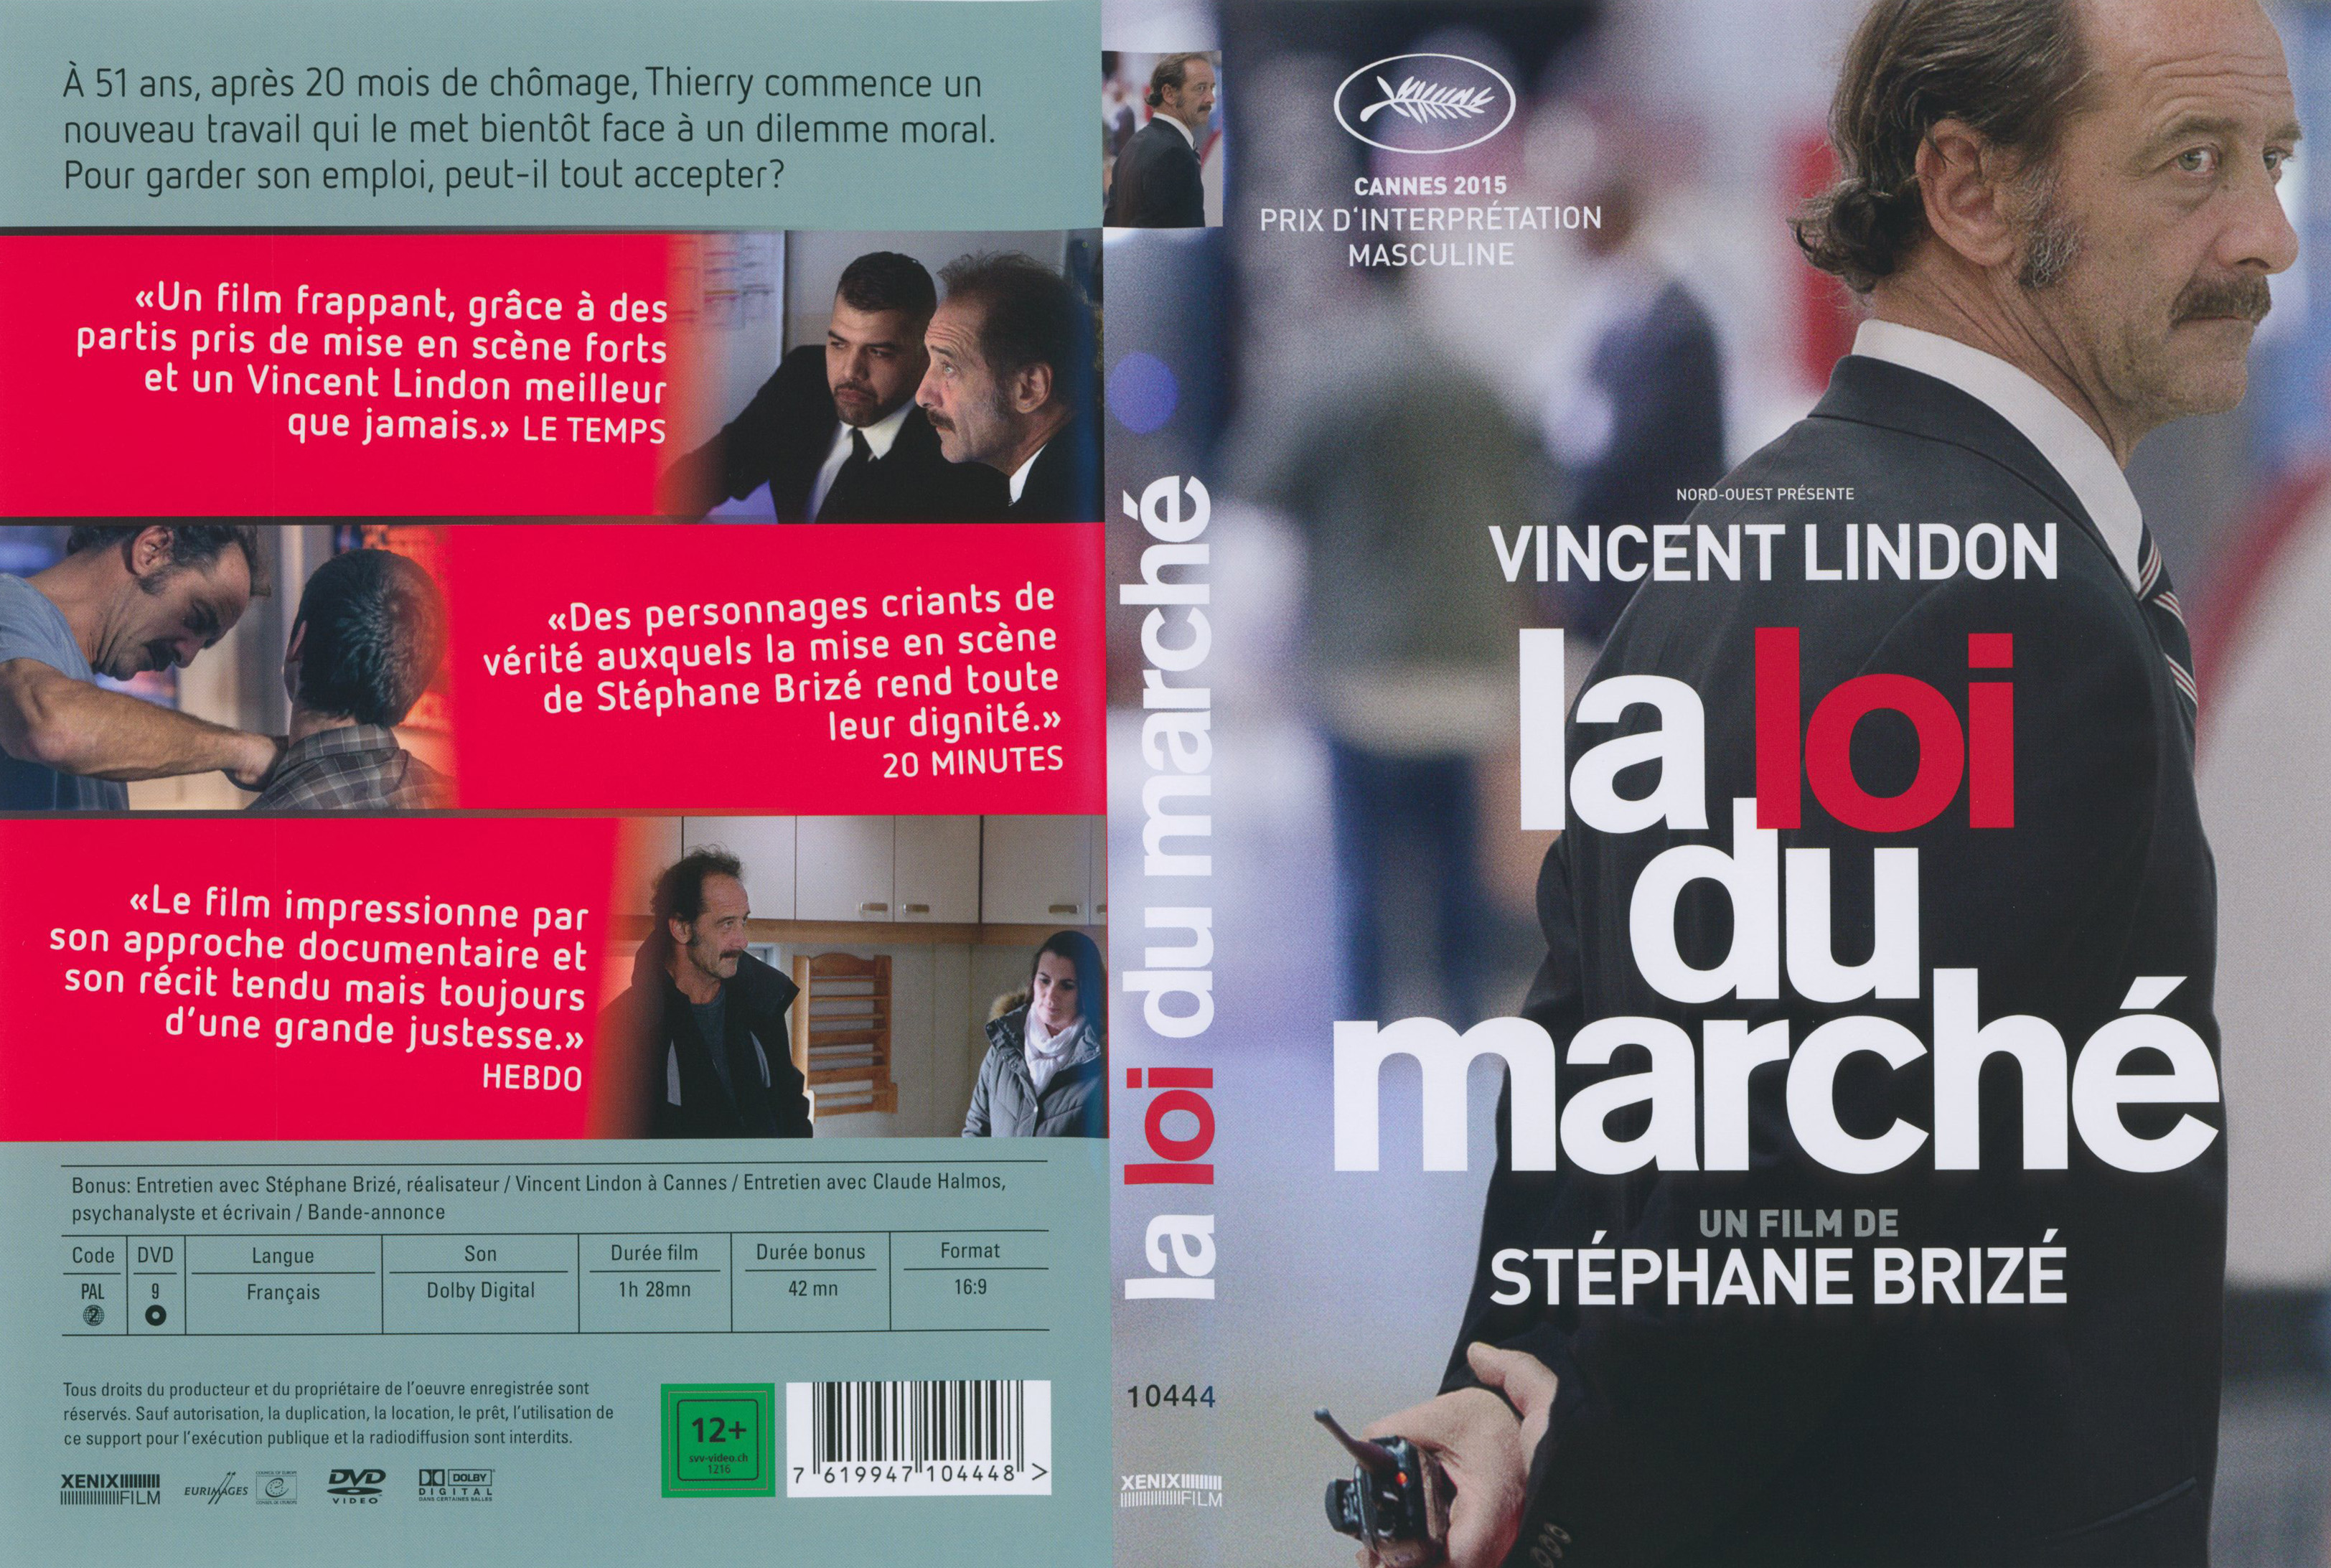 Jaquette DVD La loi du march v2